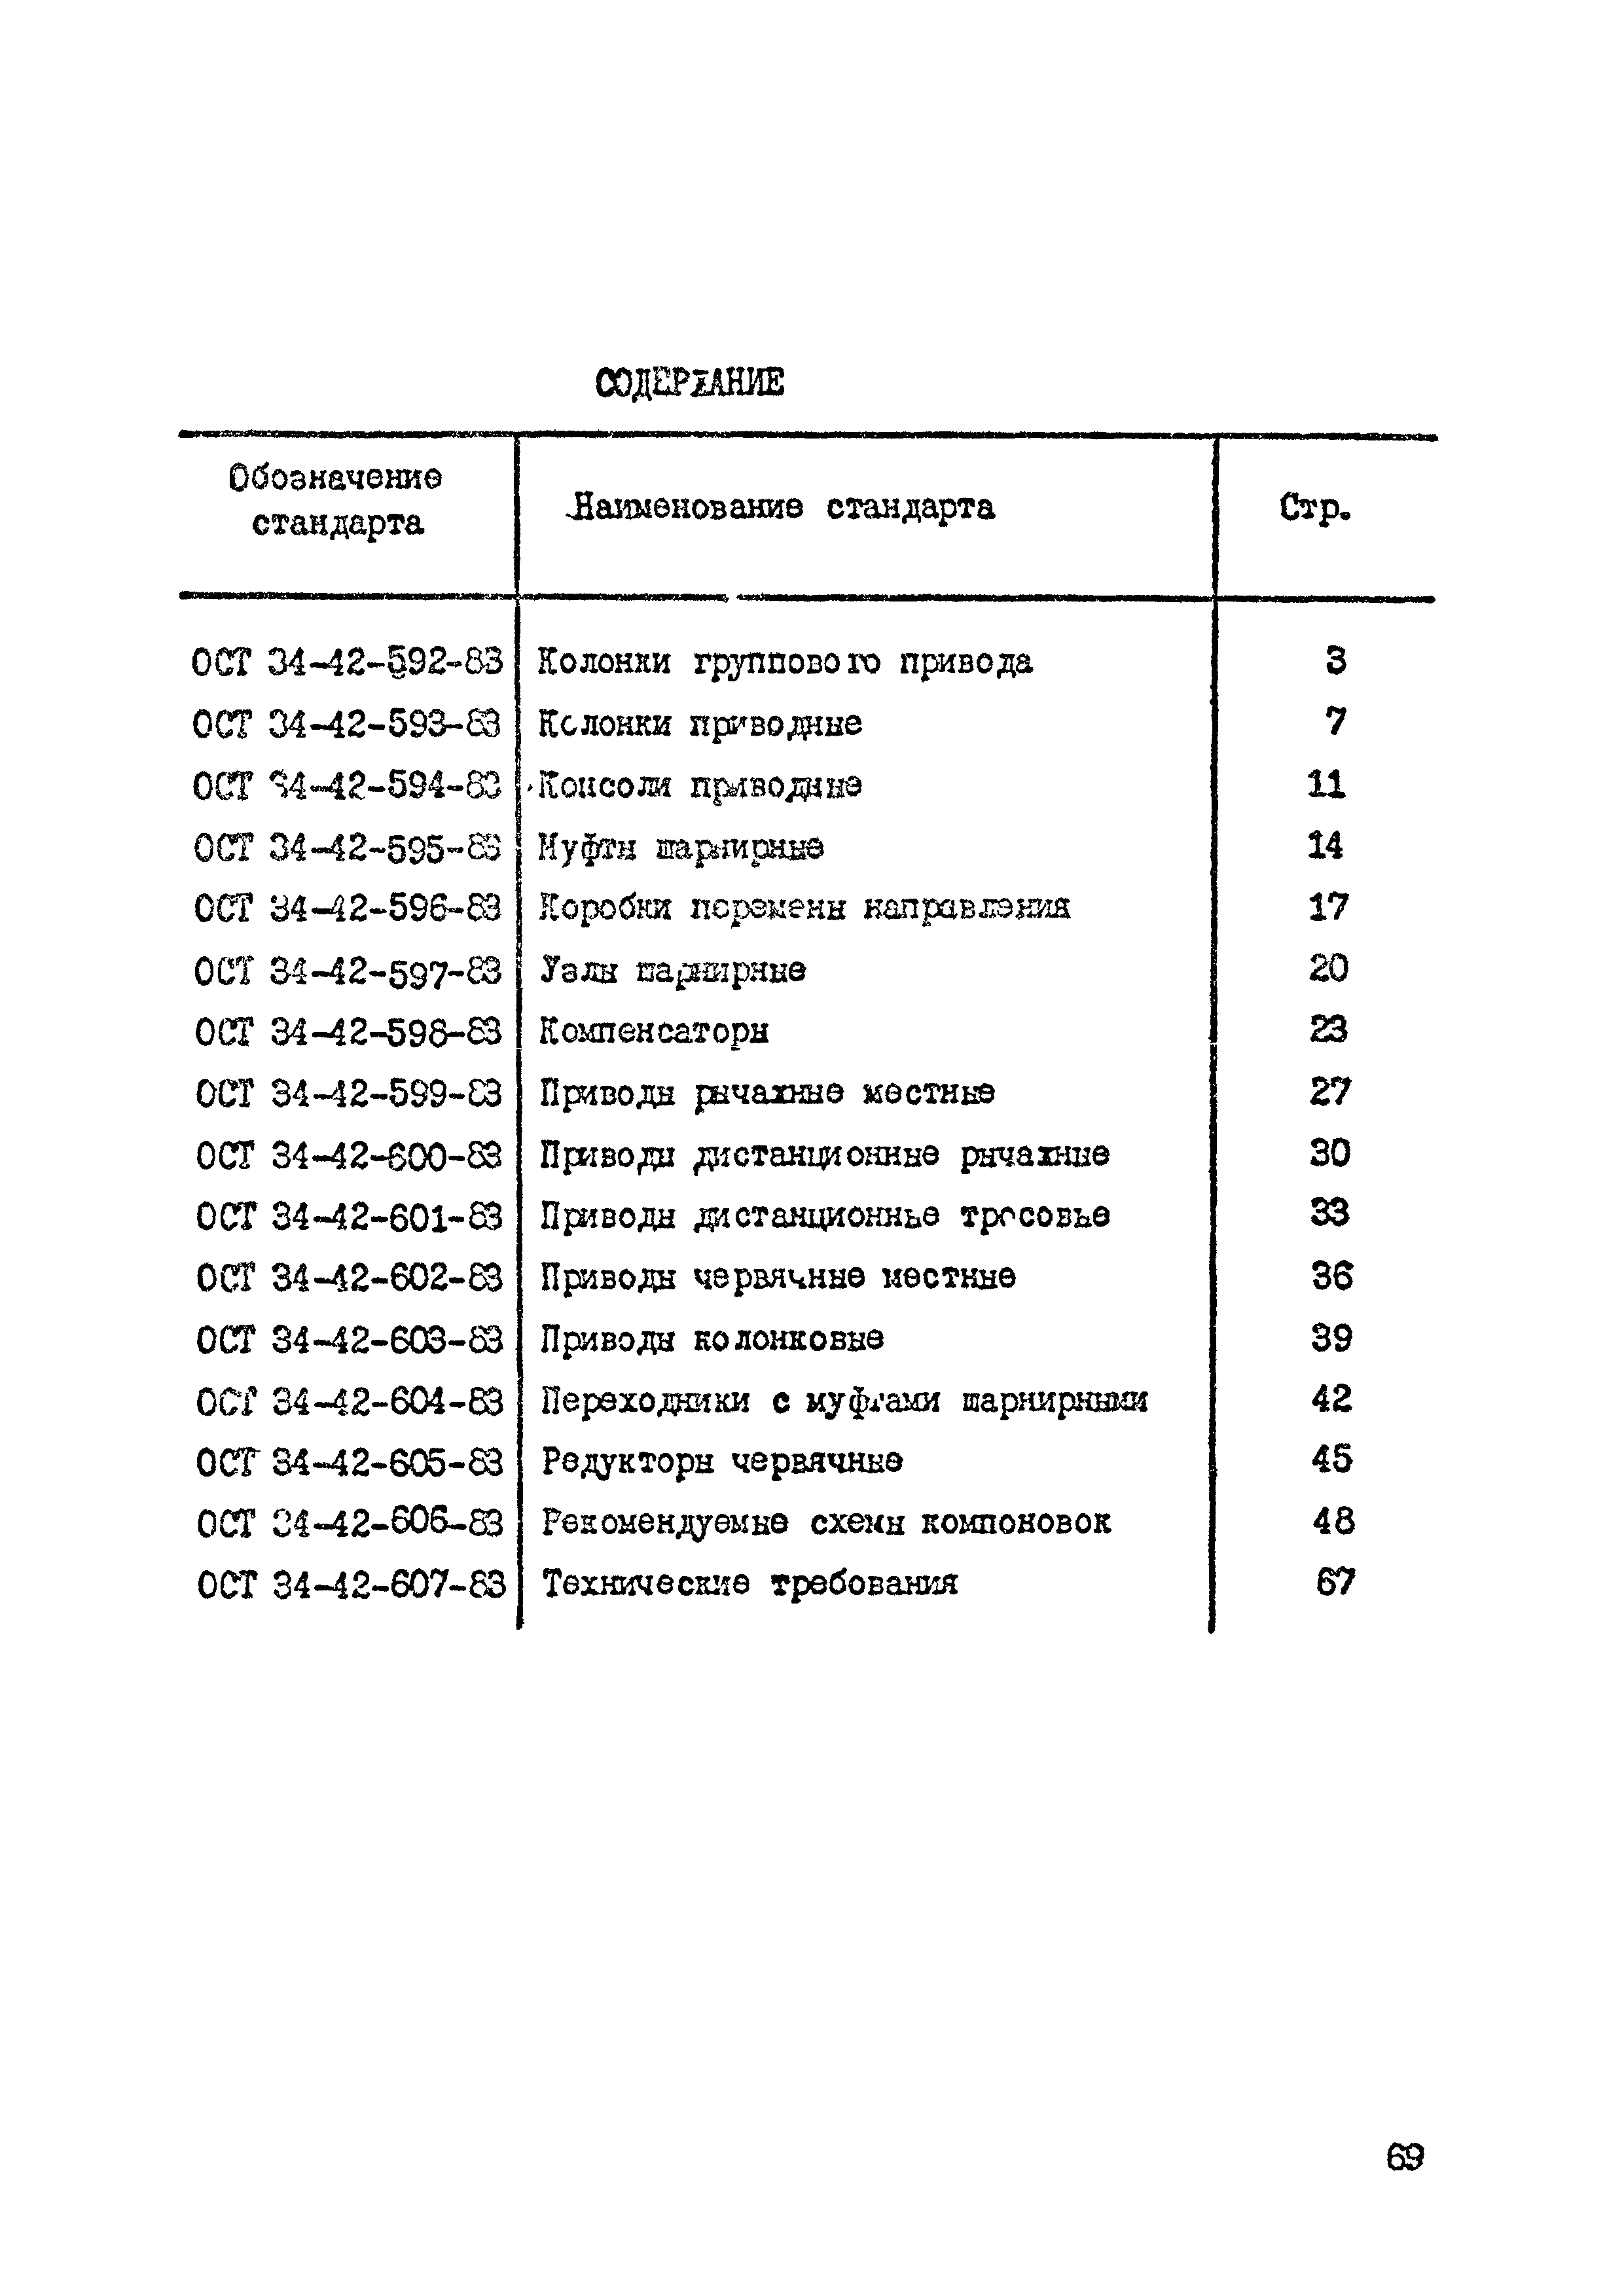 ОСТ 34-42-602-83